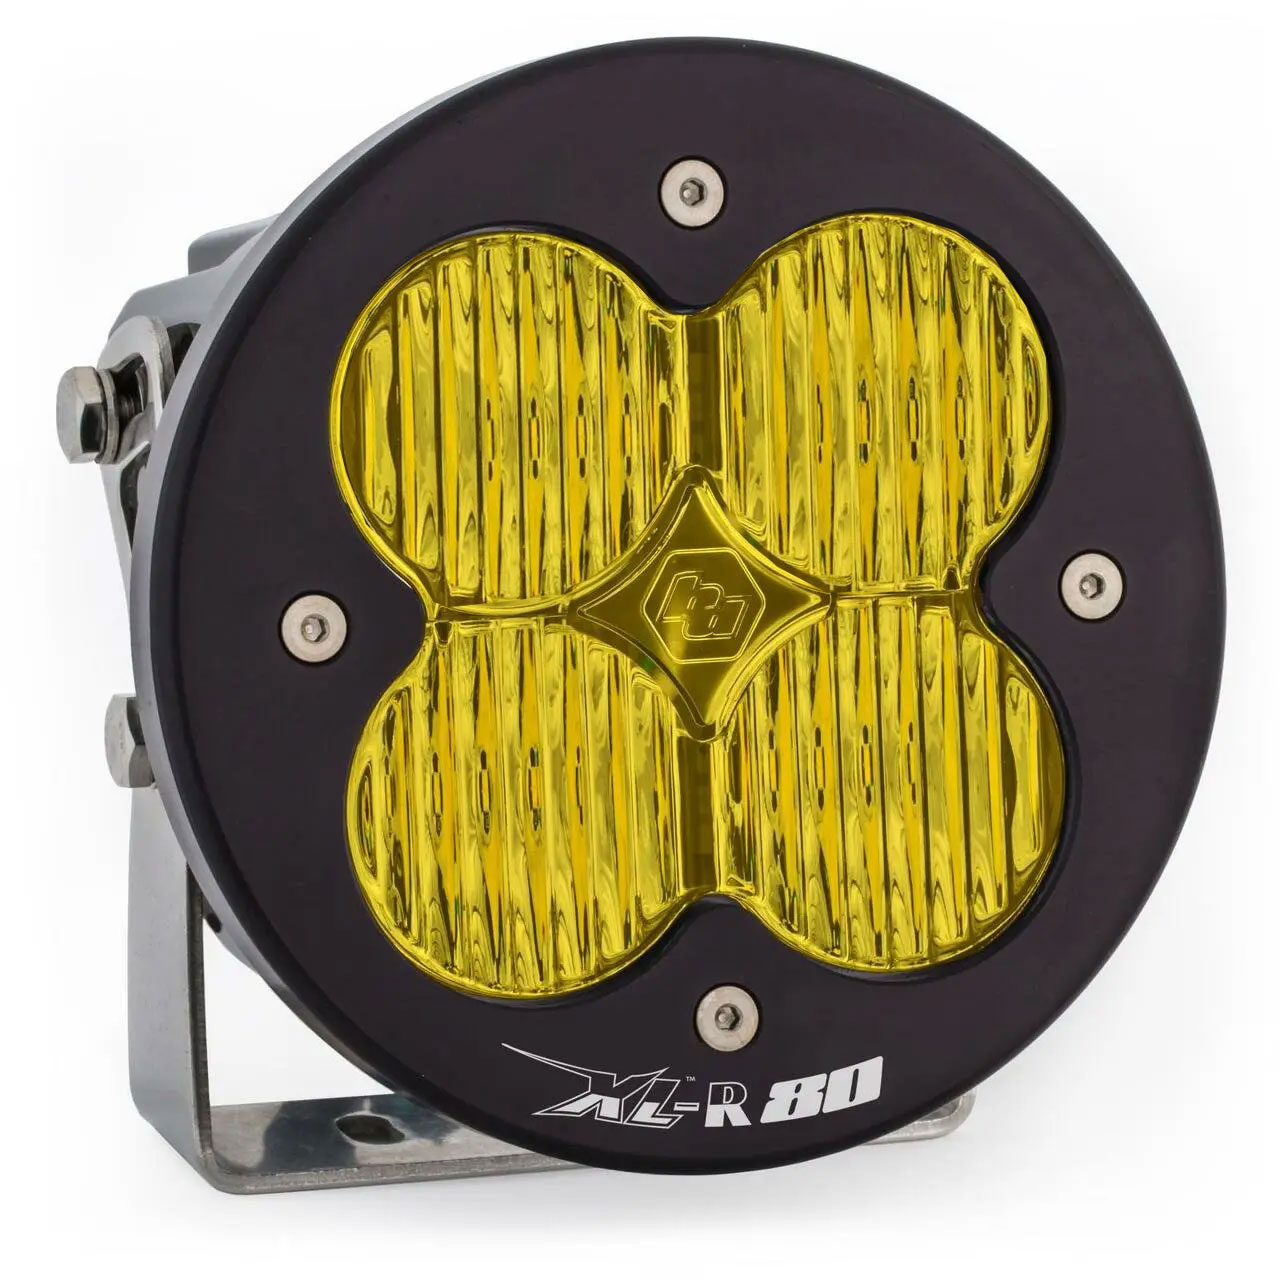 Baja Designs 760015 LED Light Pods Amber Lens Spot XL R 80 Wide Cornering